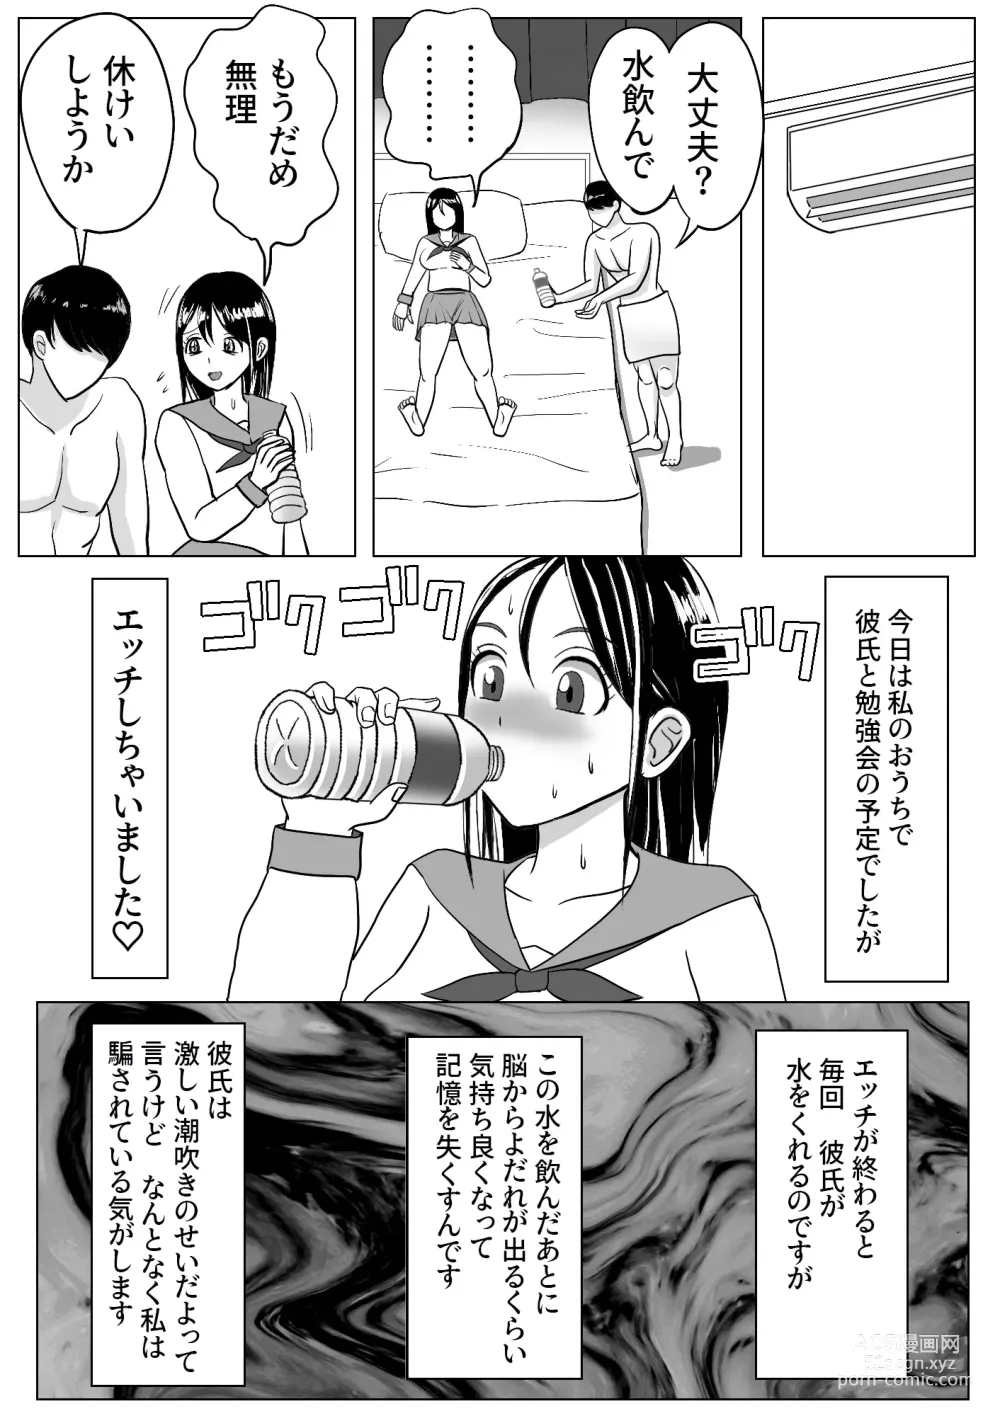 Page 7 of doujinshi Kawa-ka dorinku kanojo no kawa de itazura